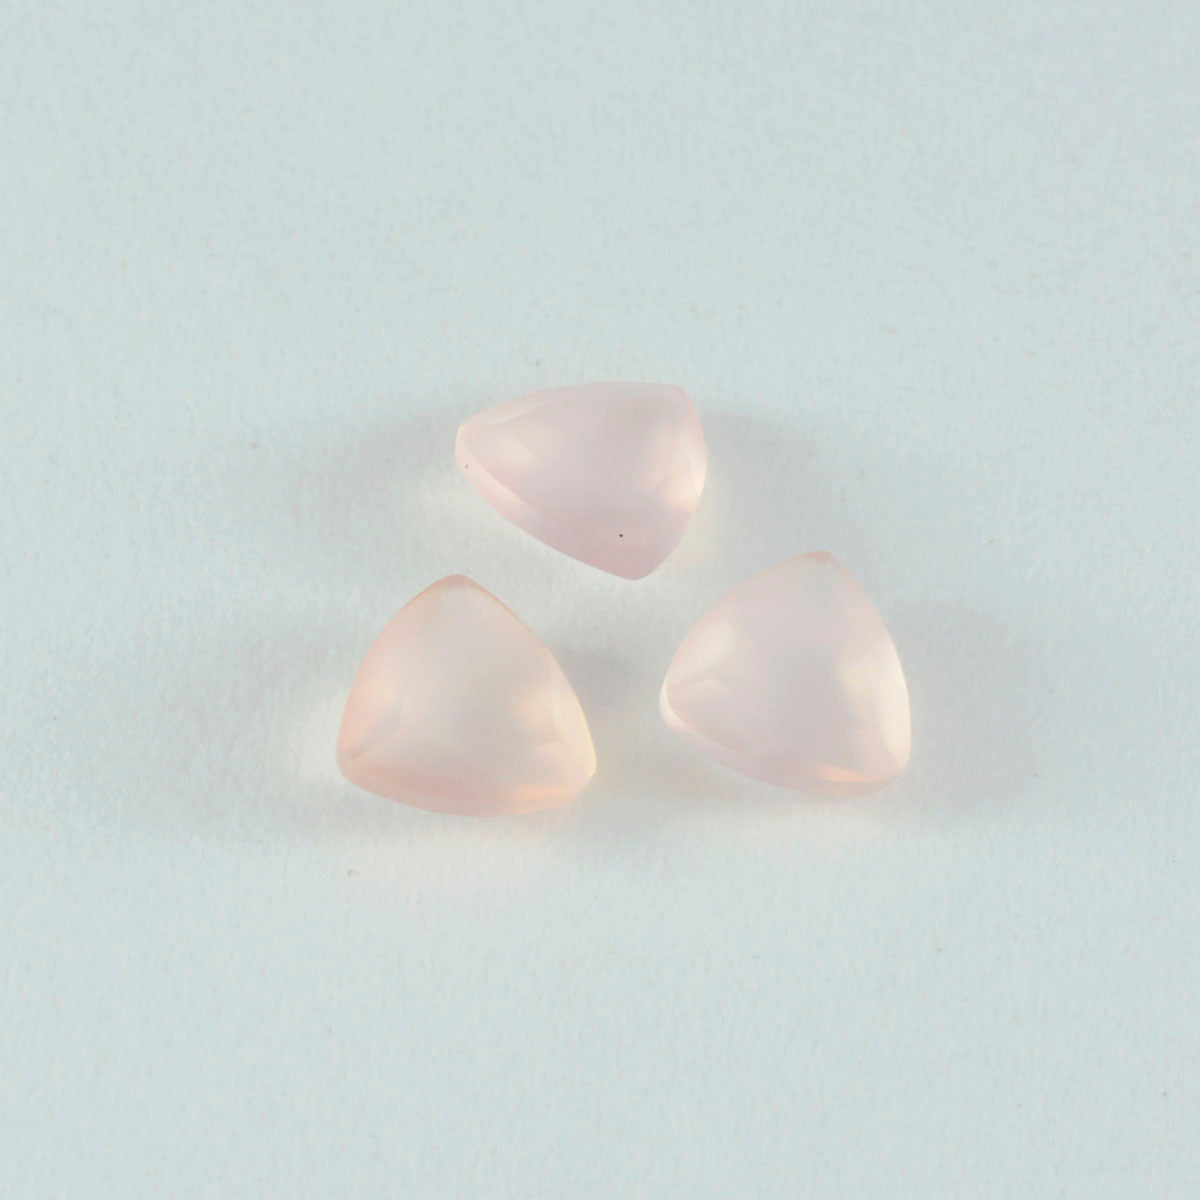 riyogems 1pc quartz rose à facettes 9x9 mm forme trillion a+ qualité pierre précieuse en vrac